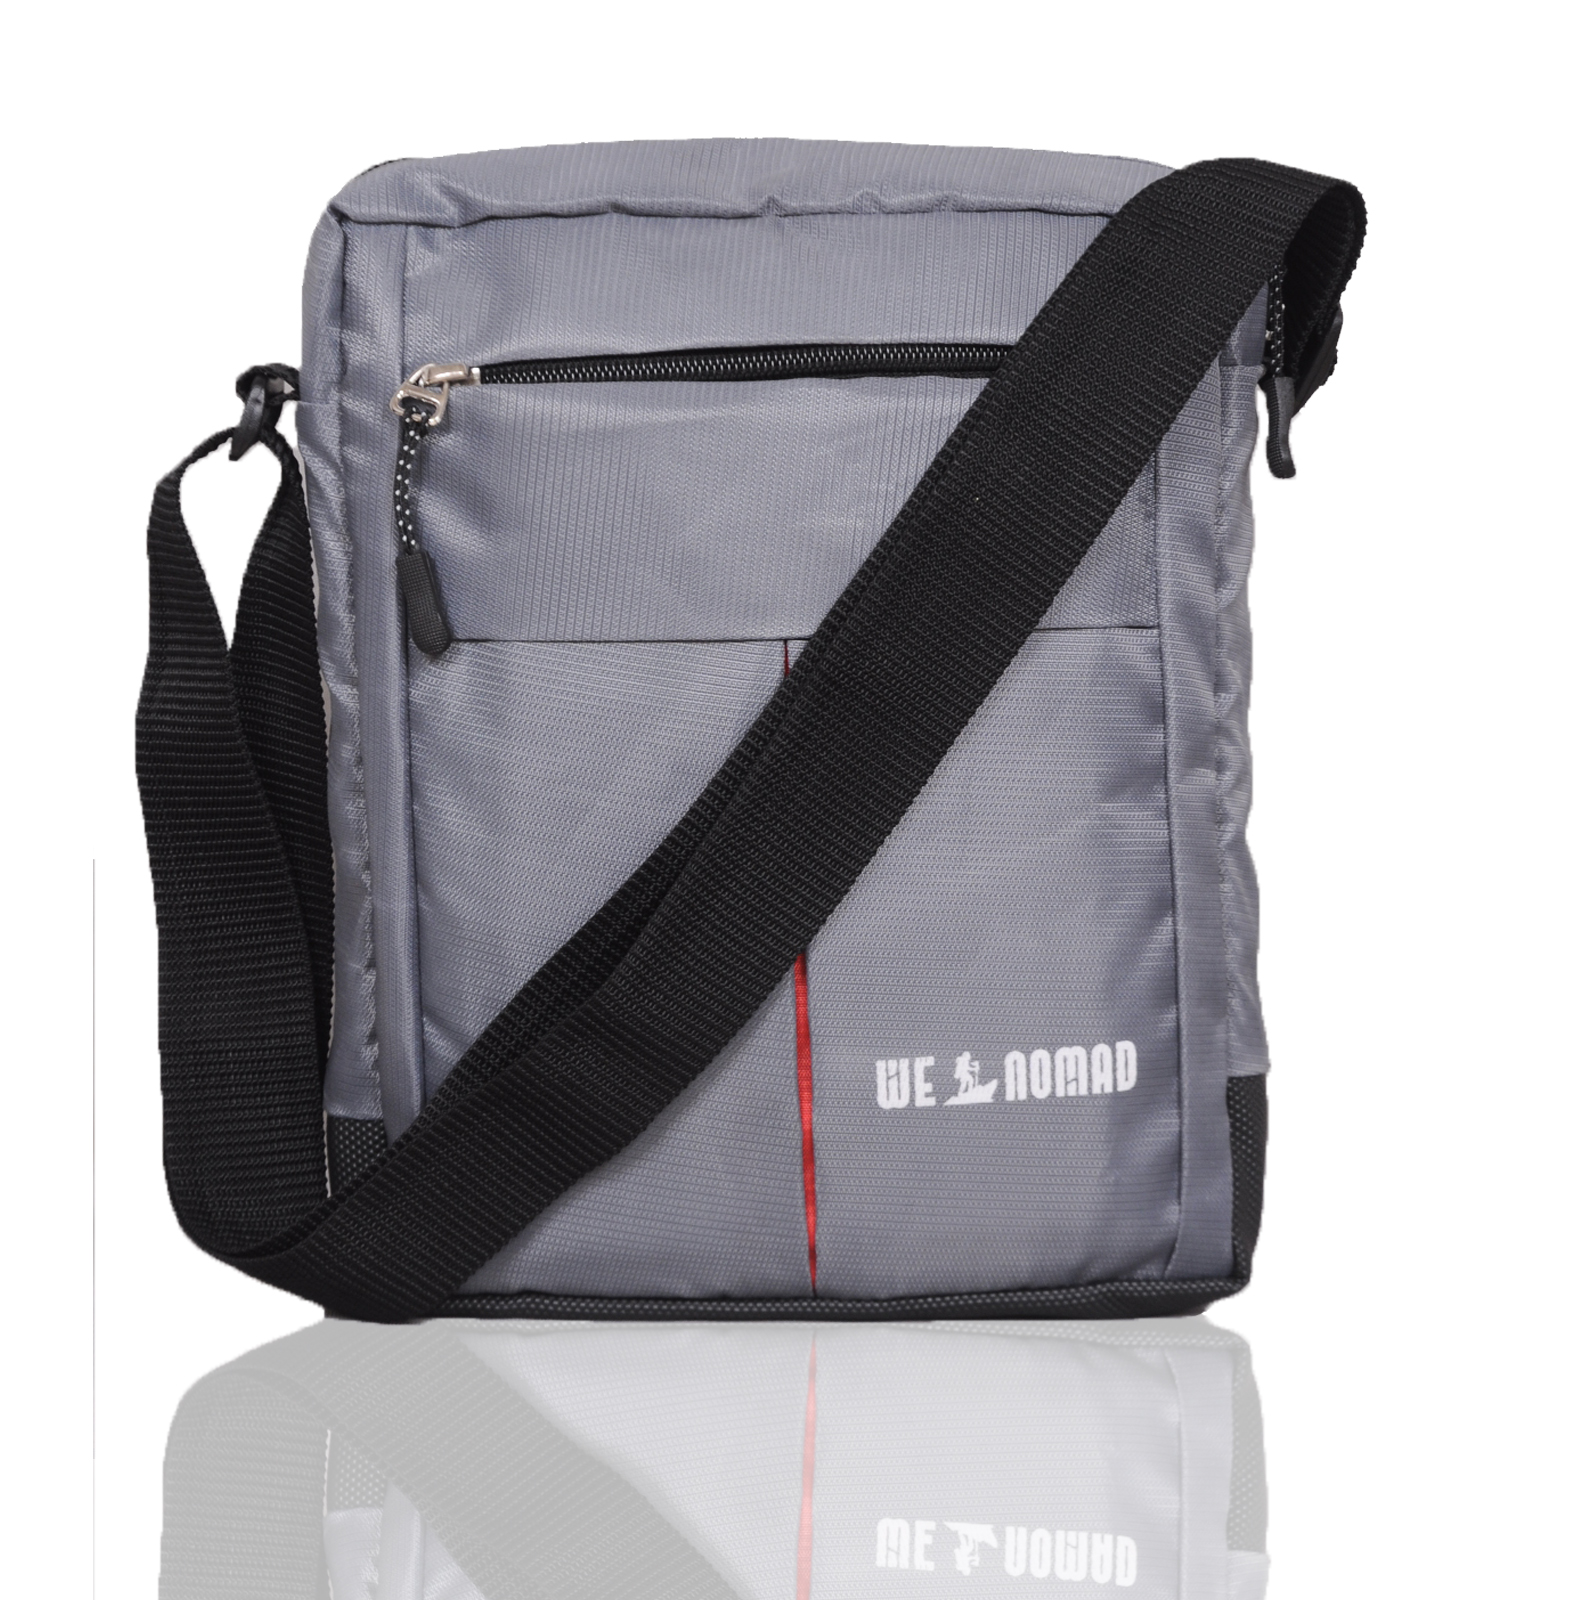 Sling Bag SEWING PATTERN, Digital File, VIDEO, Retro Style Sling Bag, Unisex  Crossbody Bag Pattern, Men's Bag, Pdf, Instant Download - Etsy | Sling bag  pattern, Sling bag, Modern bag